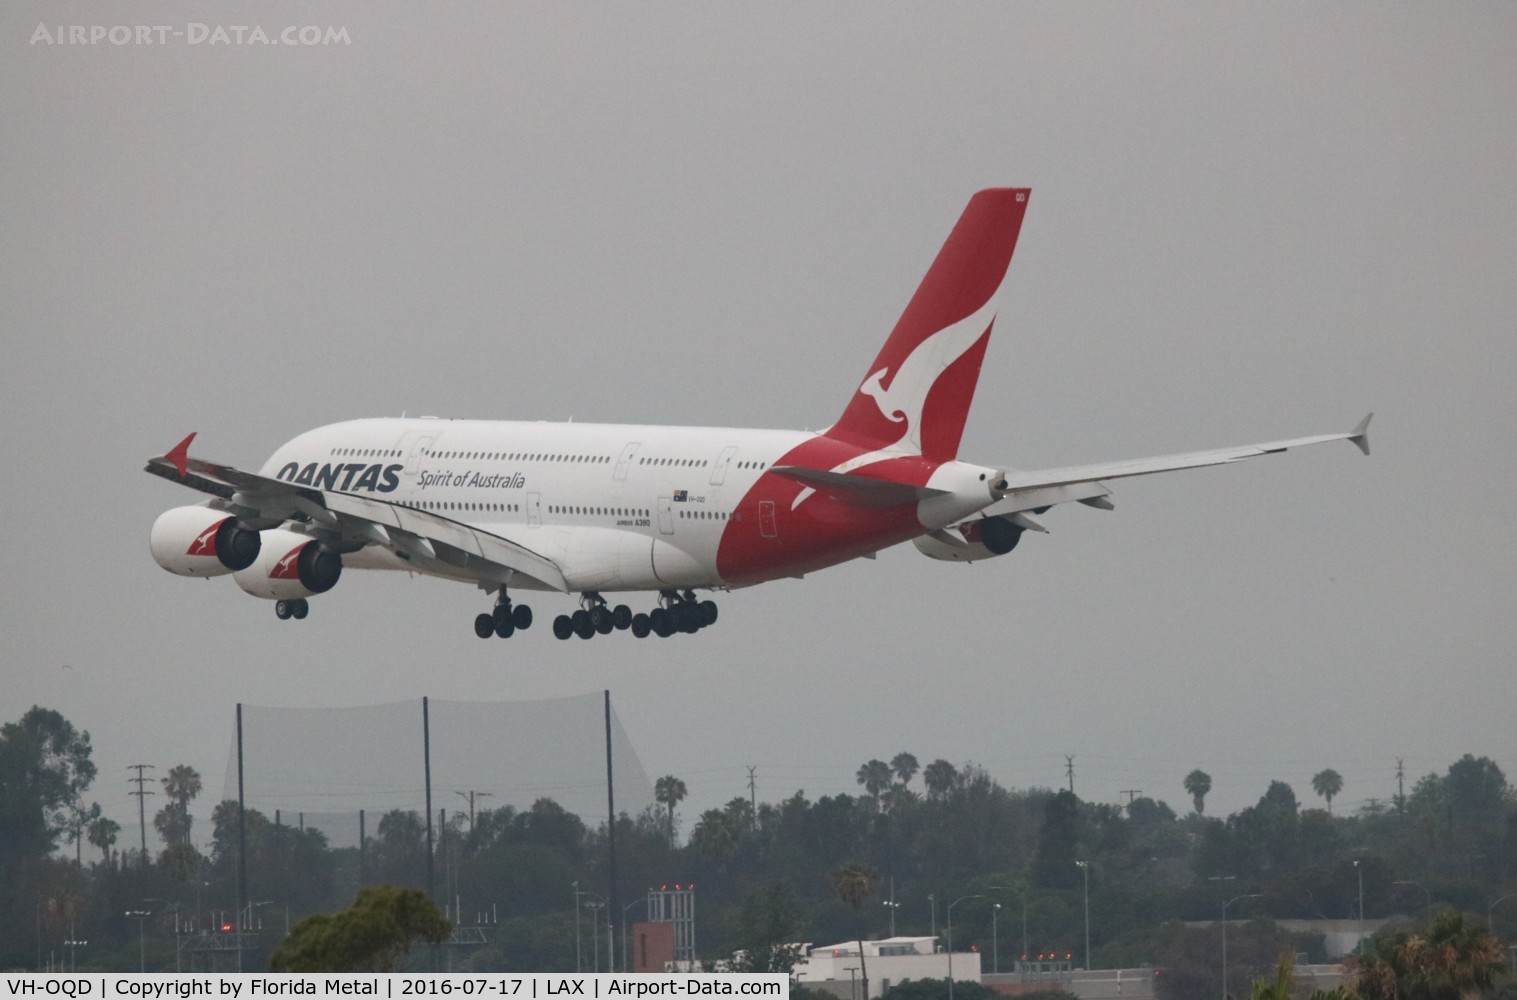 VH-OQD, 2008 Airbus A380-842 C/N 026, Qantas